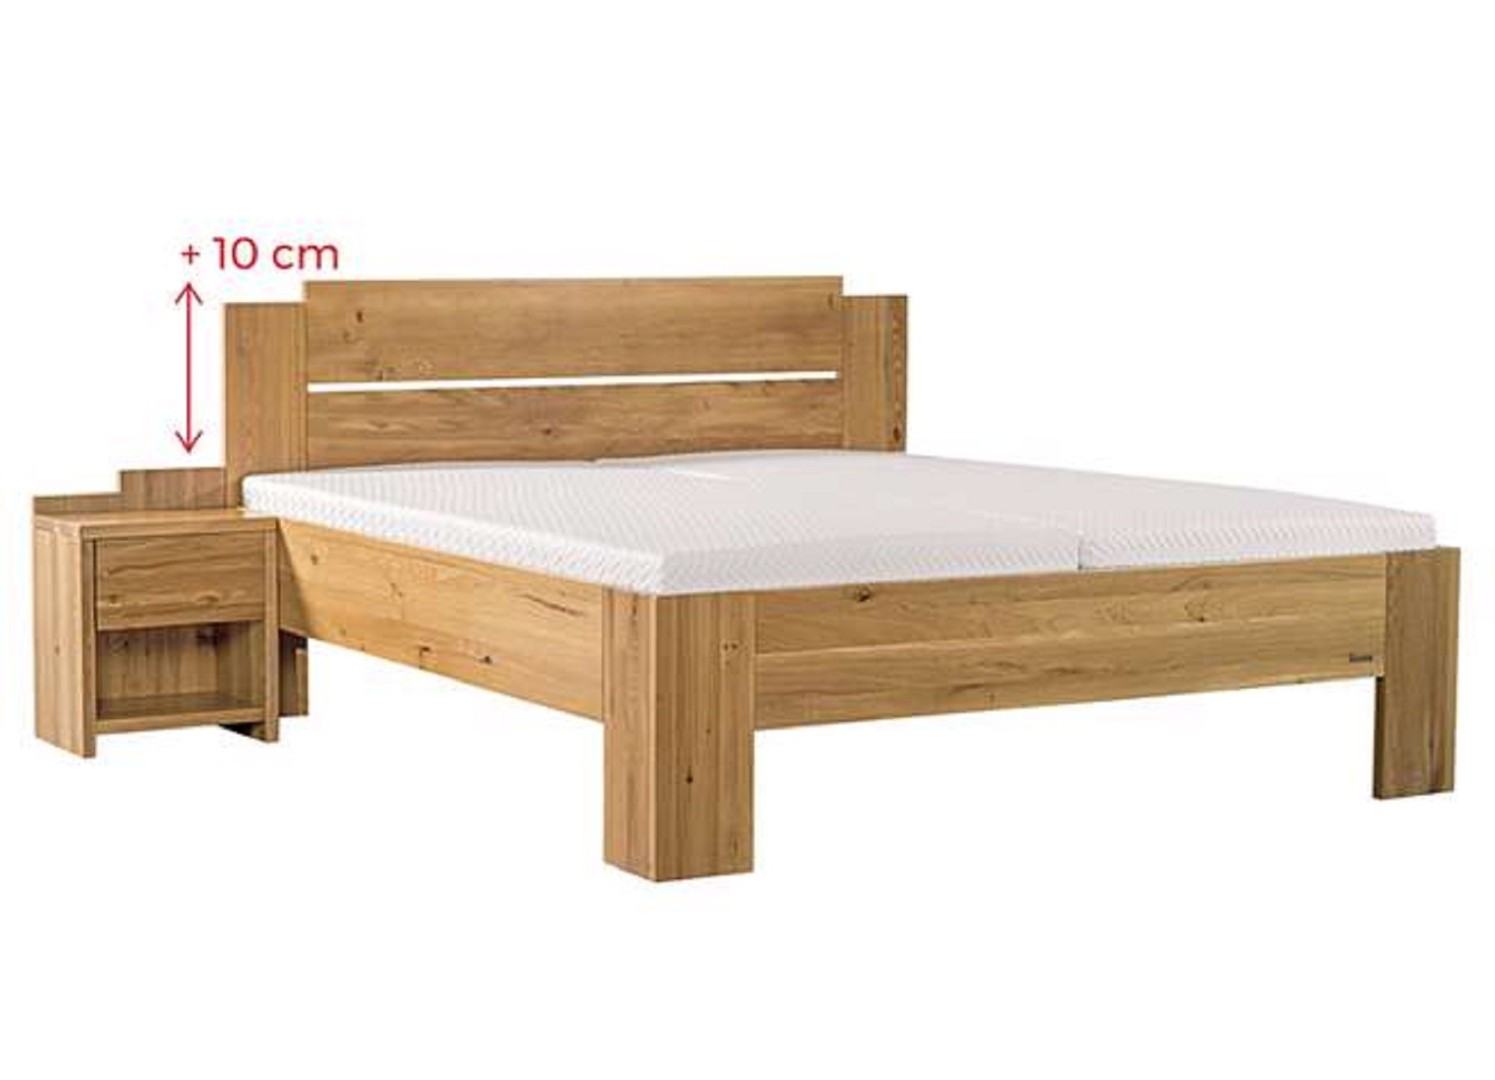 Ahorn GRADO MAX - masivní dubová postel se zvýšeným čelem 100 x 200 cm, dub masiv